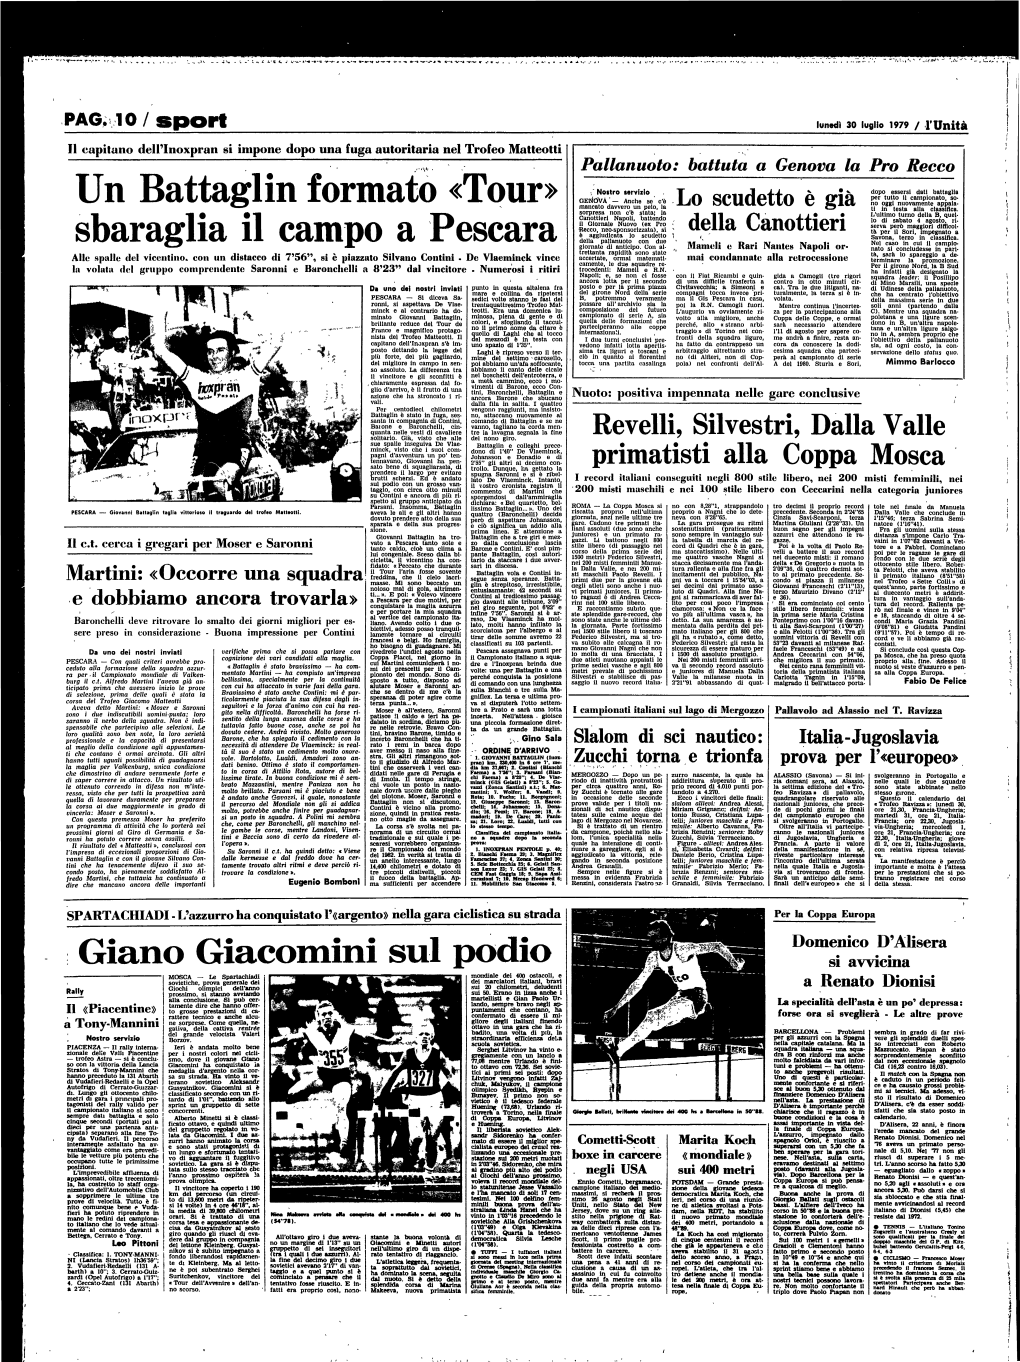 PAG. 10/ Sport Lunedi 30 Luglio 1979 / L'unità Il Capitano Dell'inoxpran Si Impone Dopo Una Fuga Autoritaria Nel Trofeo Matteotti